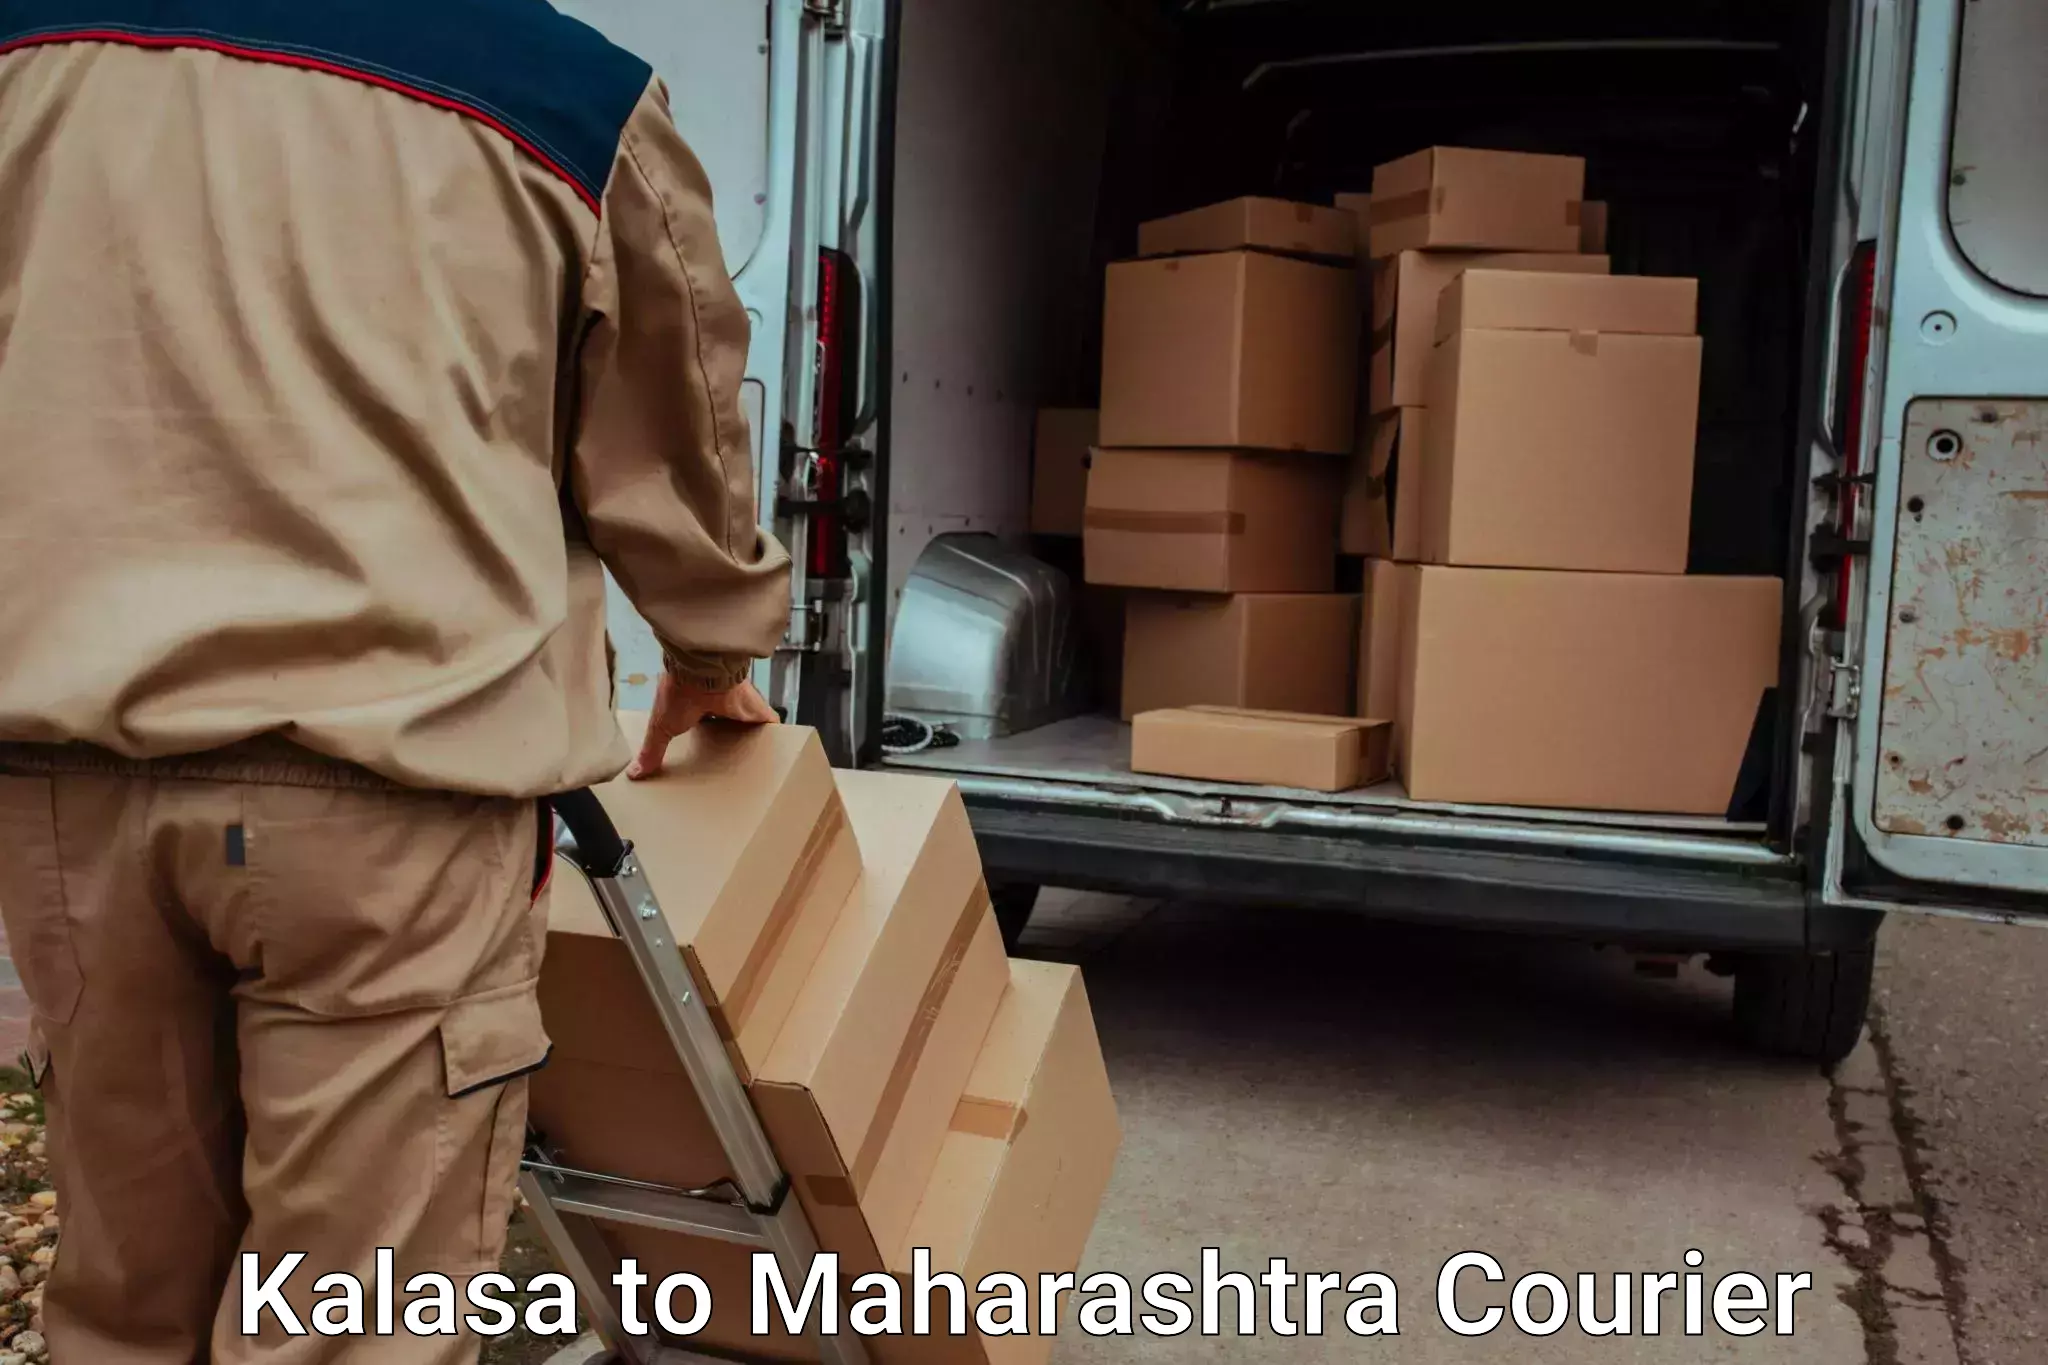 Stress-free moving in Kalasa to Maharashtra